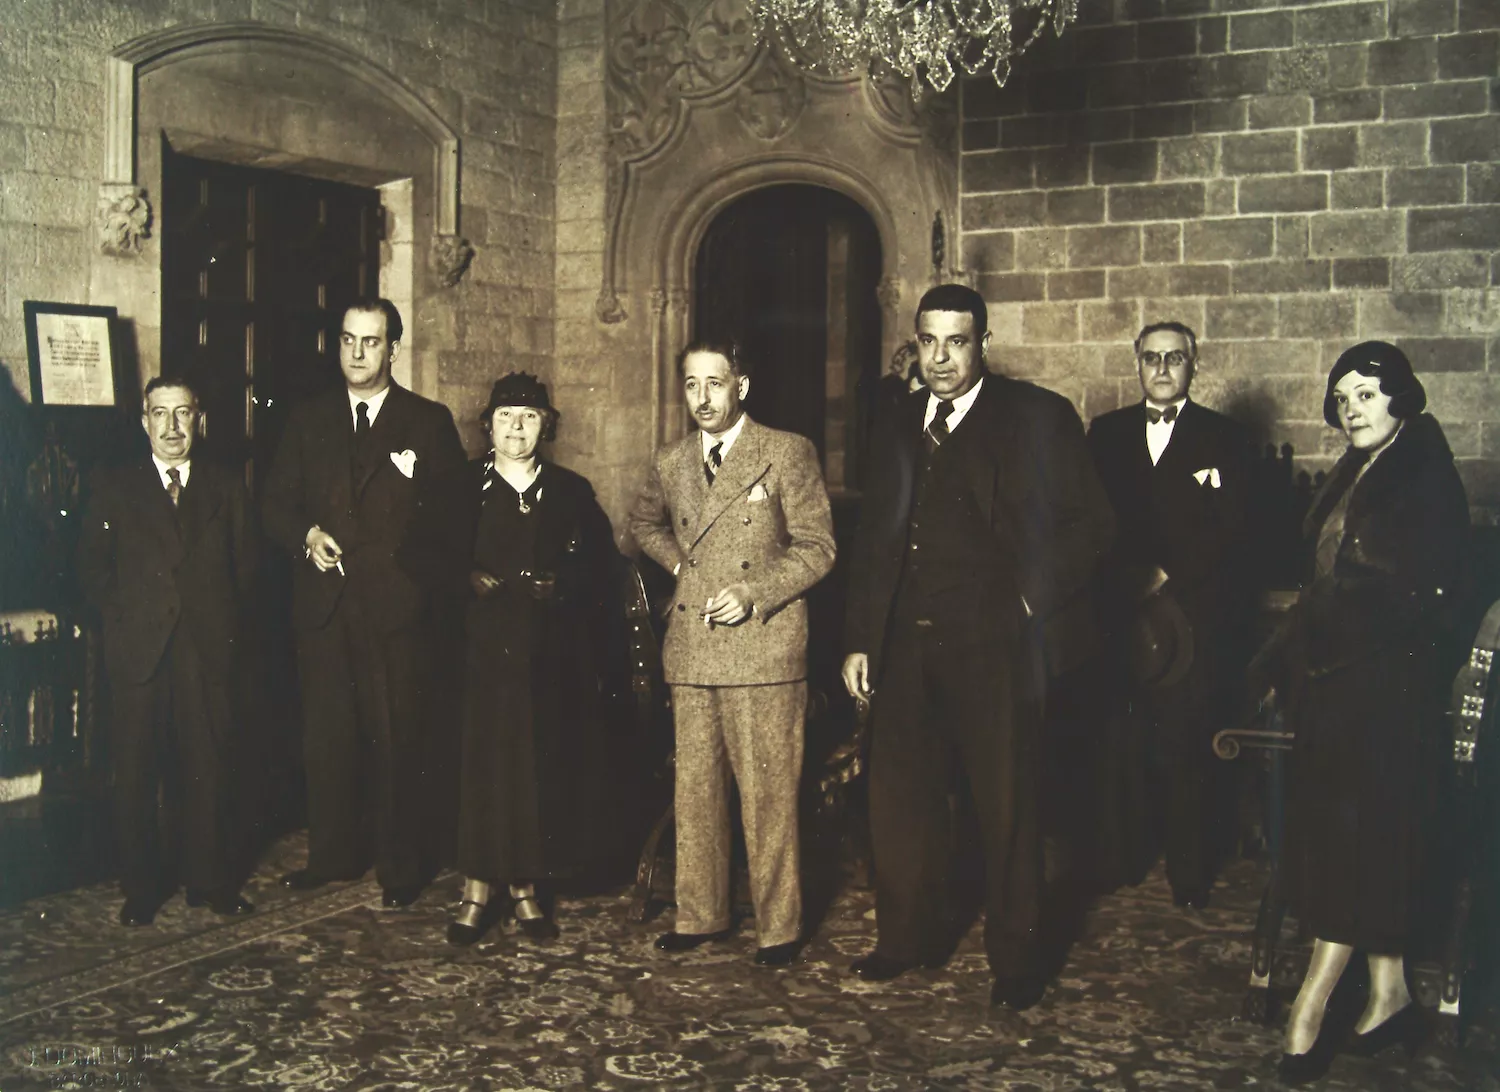 L’alcaldessa, al costat de Lluís Companys, en una recepció al Palau de la Generalitat. Tota l’alegria d’aquell 12 de febrer del 1934 s’esfumaria sols dos anys més tard